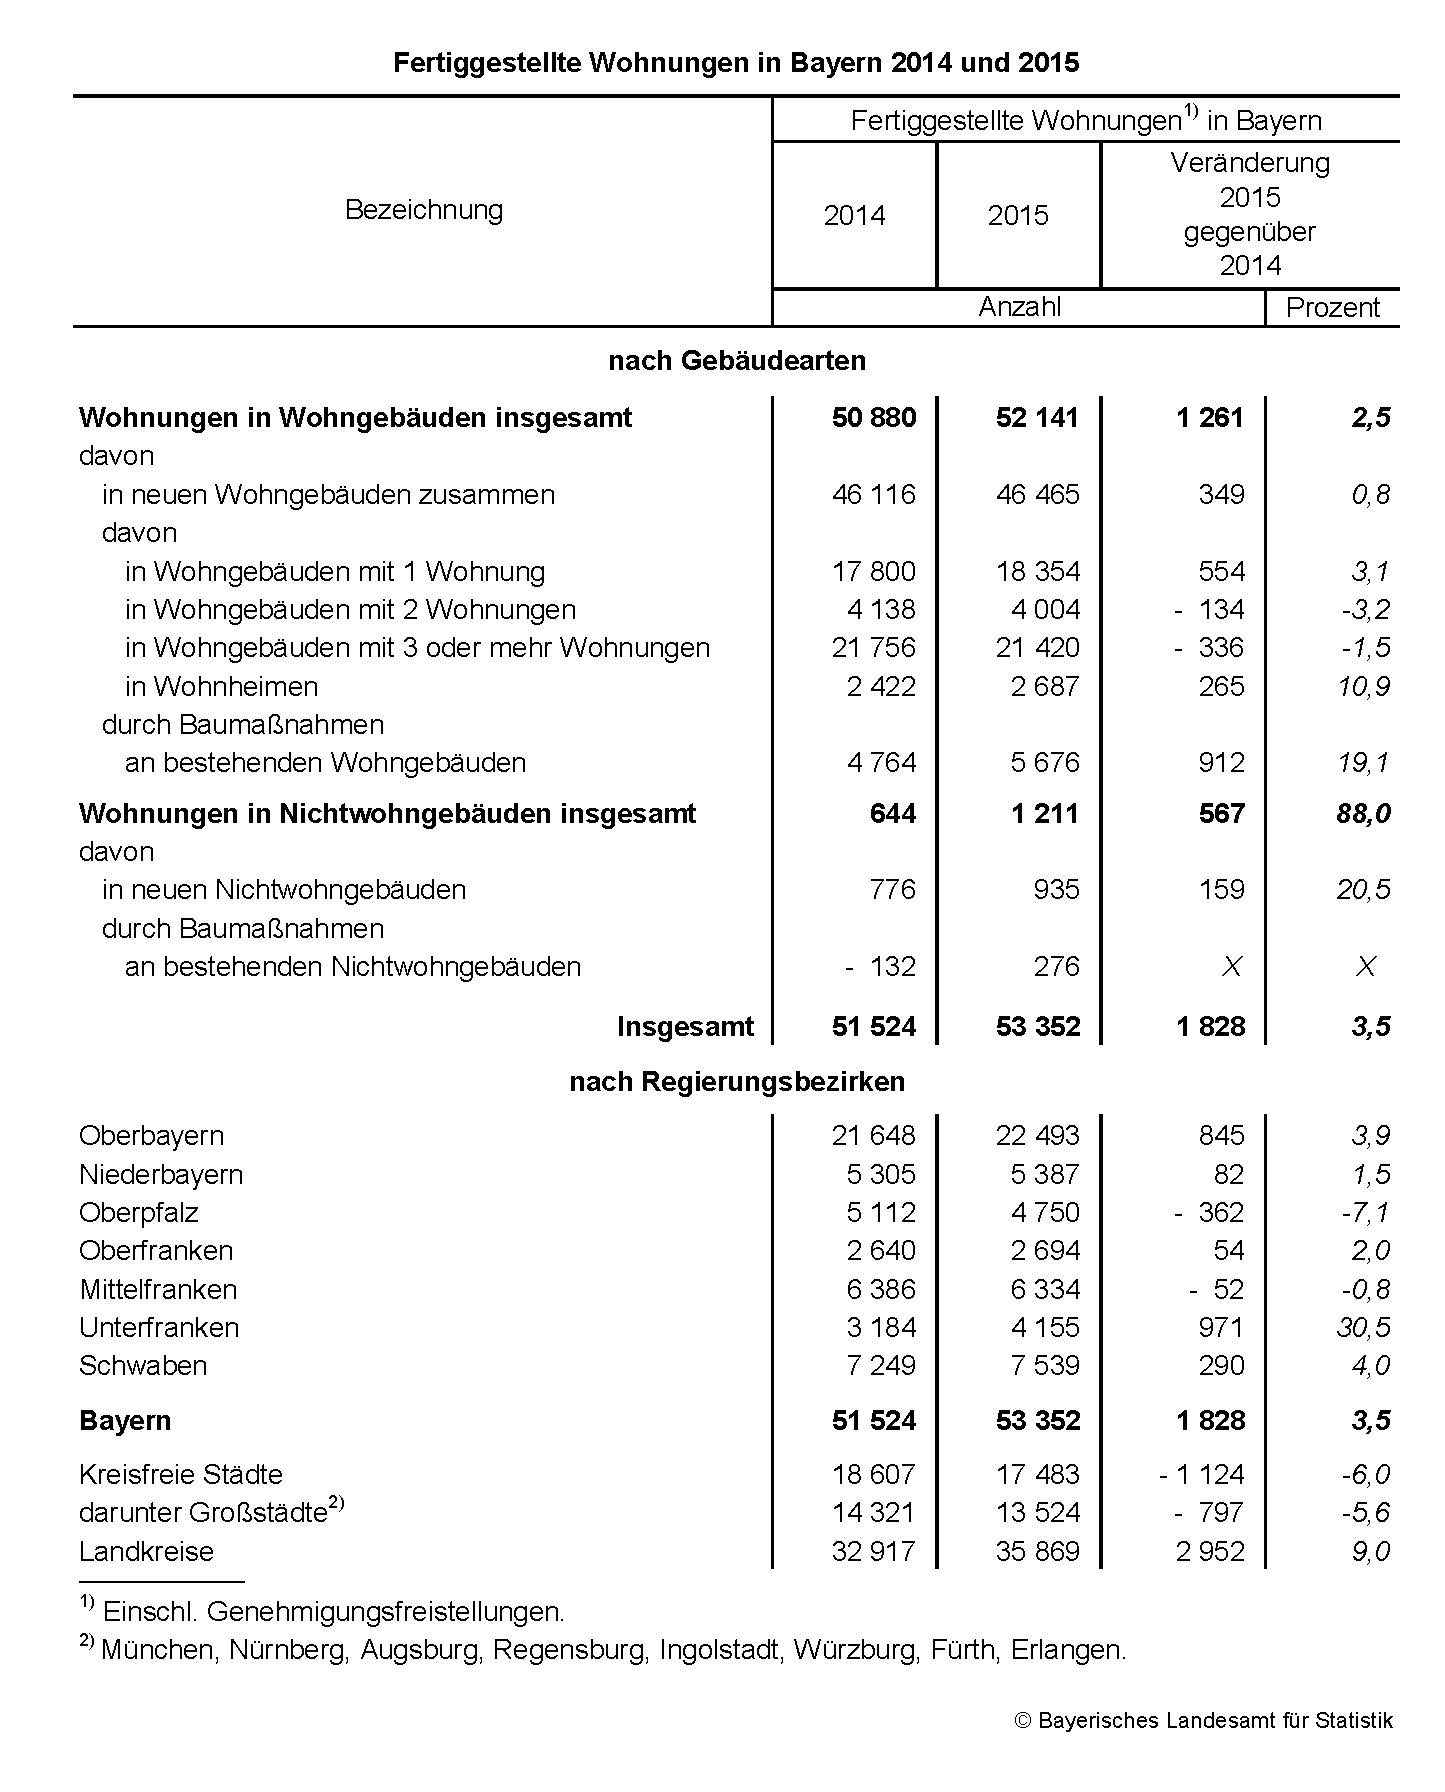  Fertiggestellte Wohnungen in Bayern 2014 und 2015